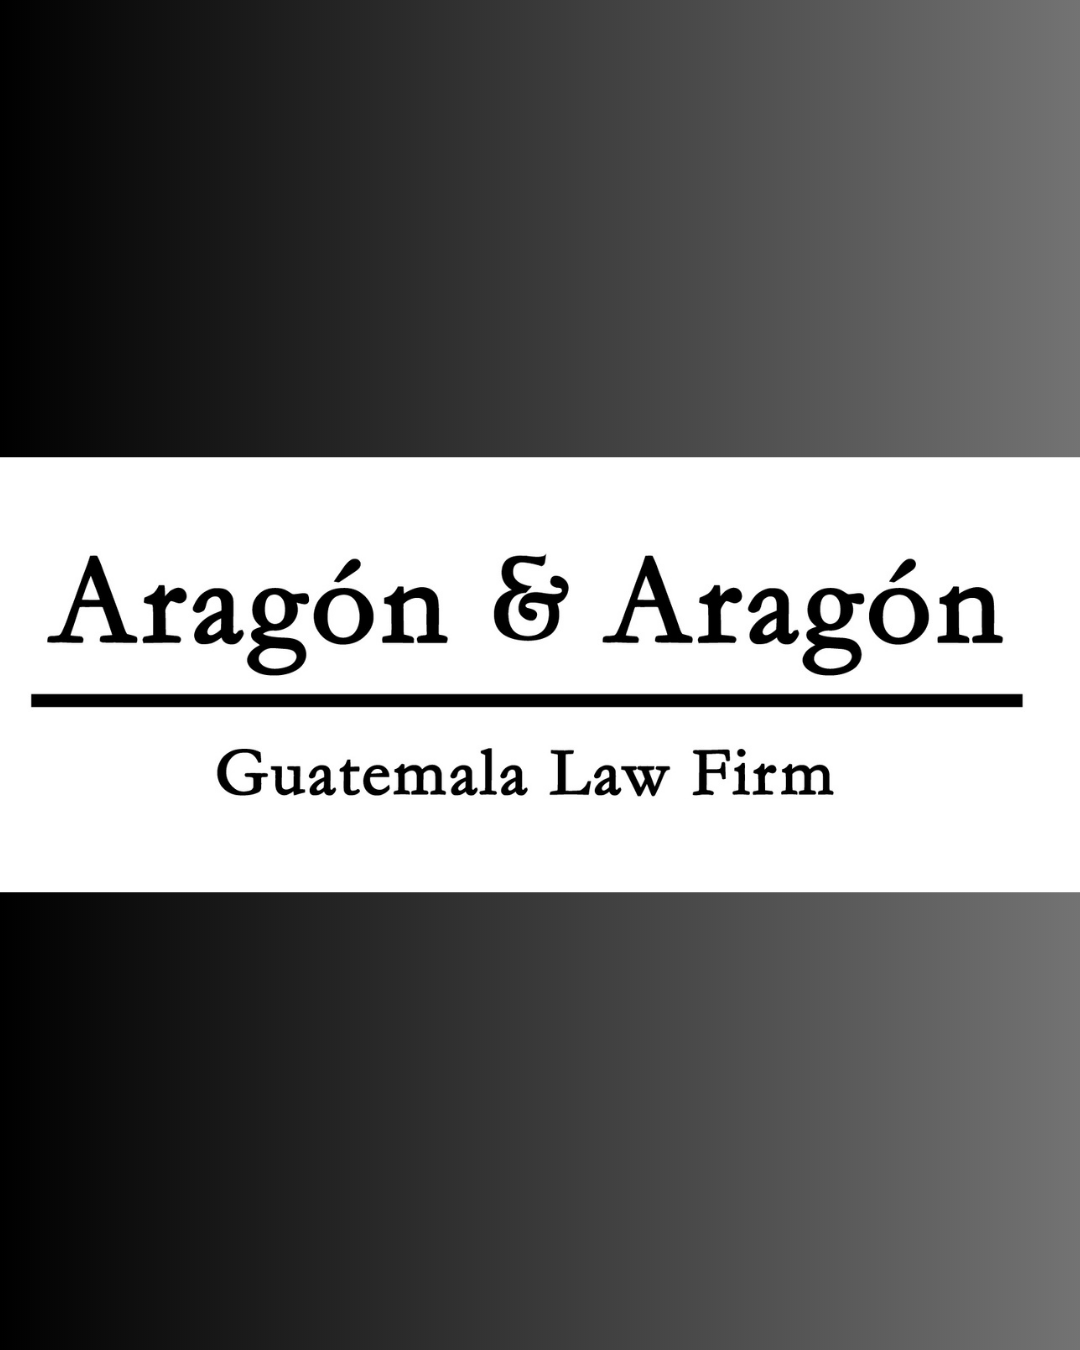 Aragón Law Firm